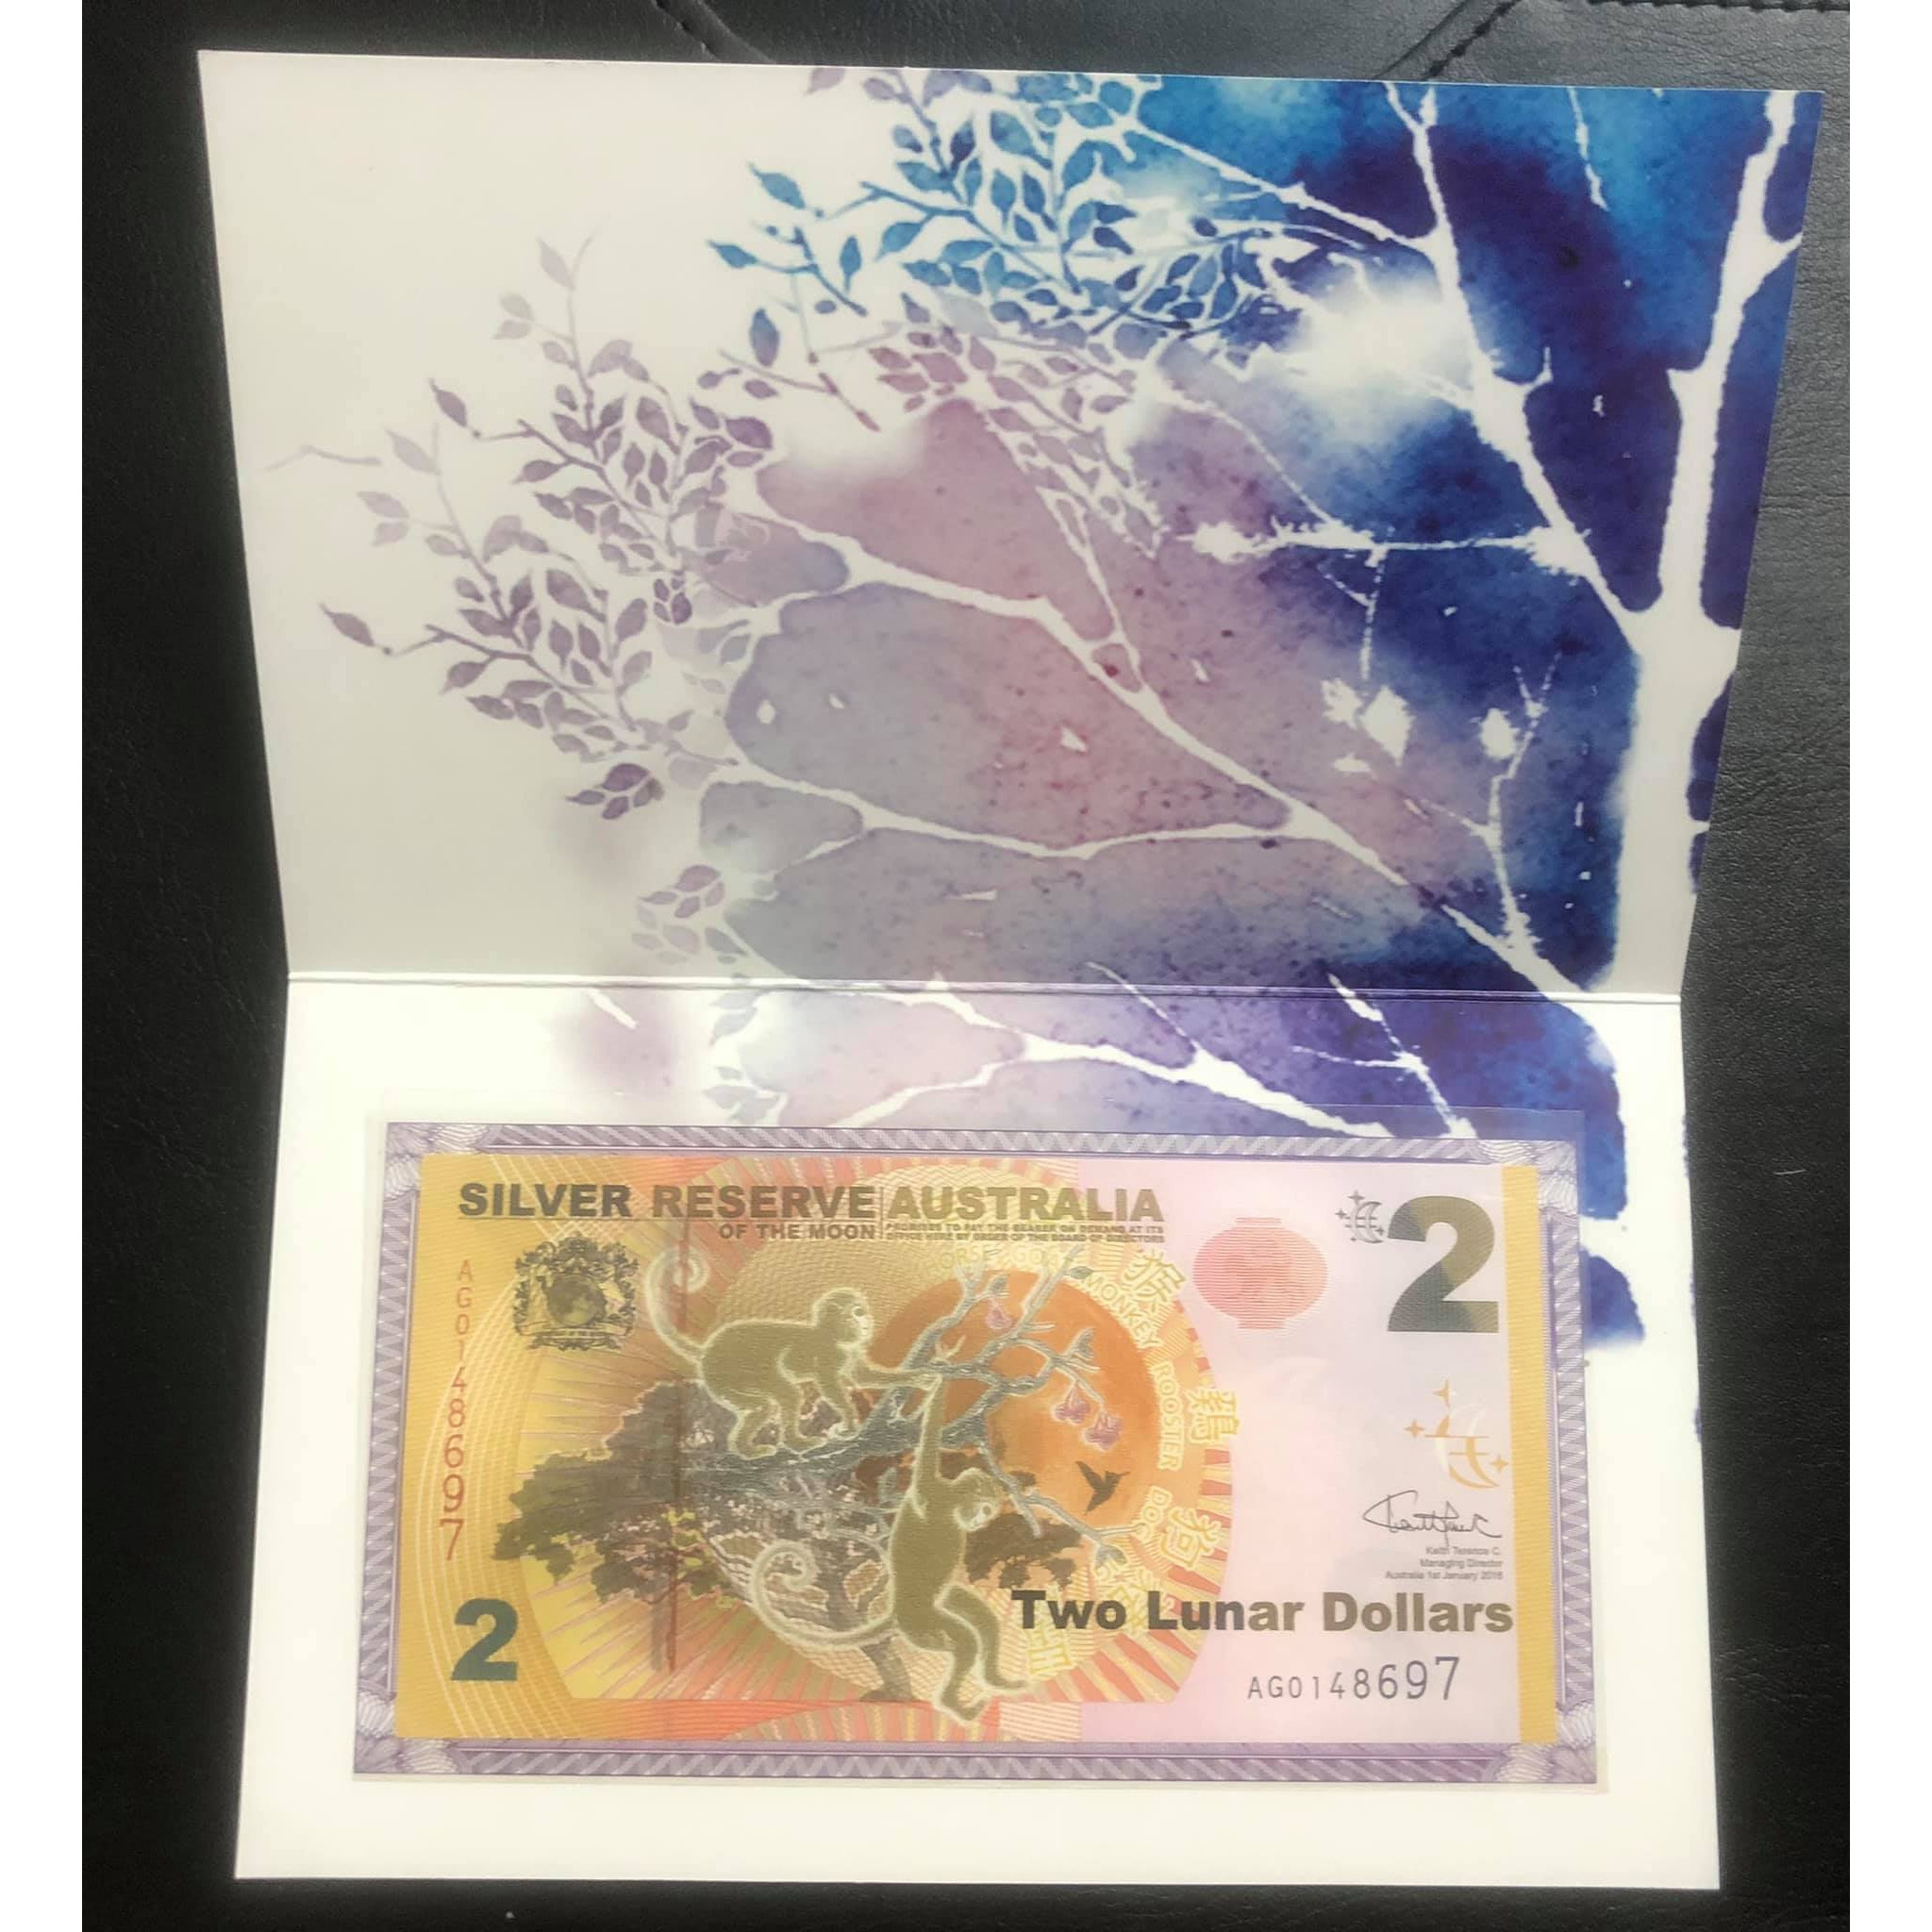 Tiền con Khỉ của Úc kỷ niệm năm Thân, kèm bìa bảo quản